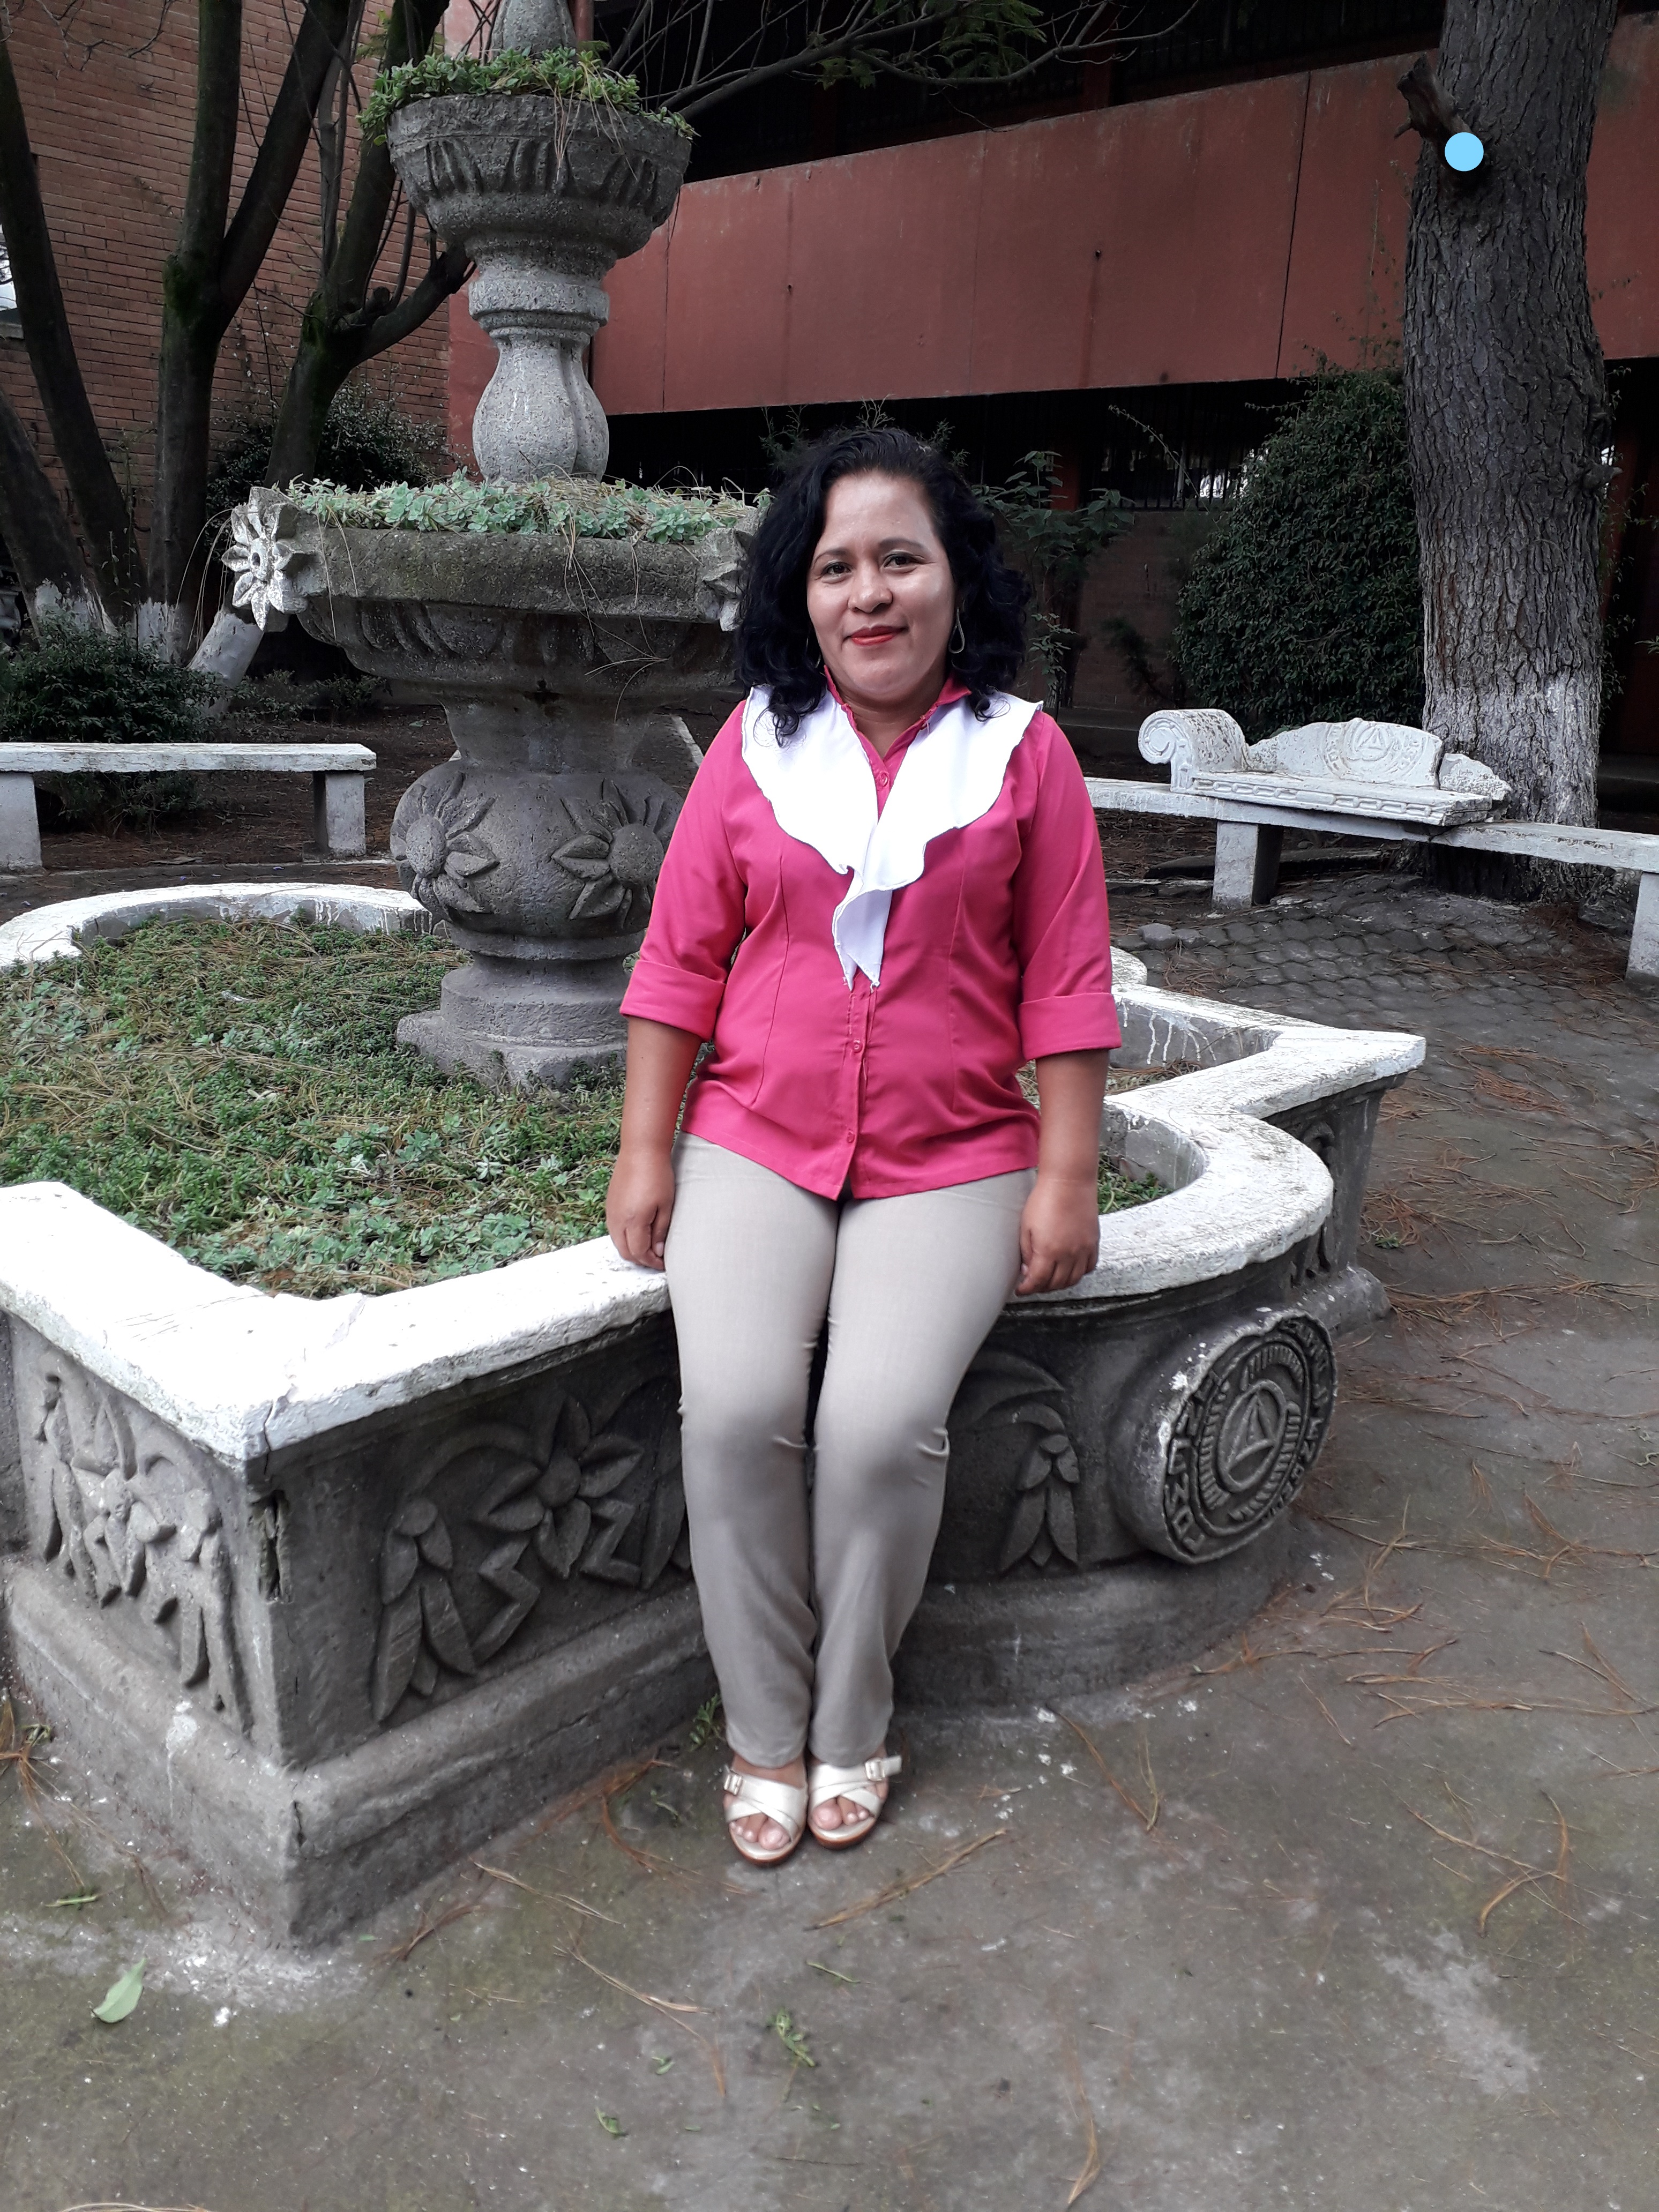 Hola soy docente del Colegio Maya Mazatenango departamento de Suchitepéquez del país Guatemala. 